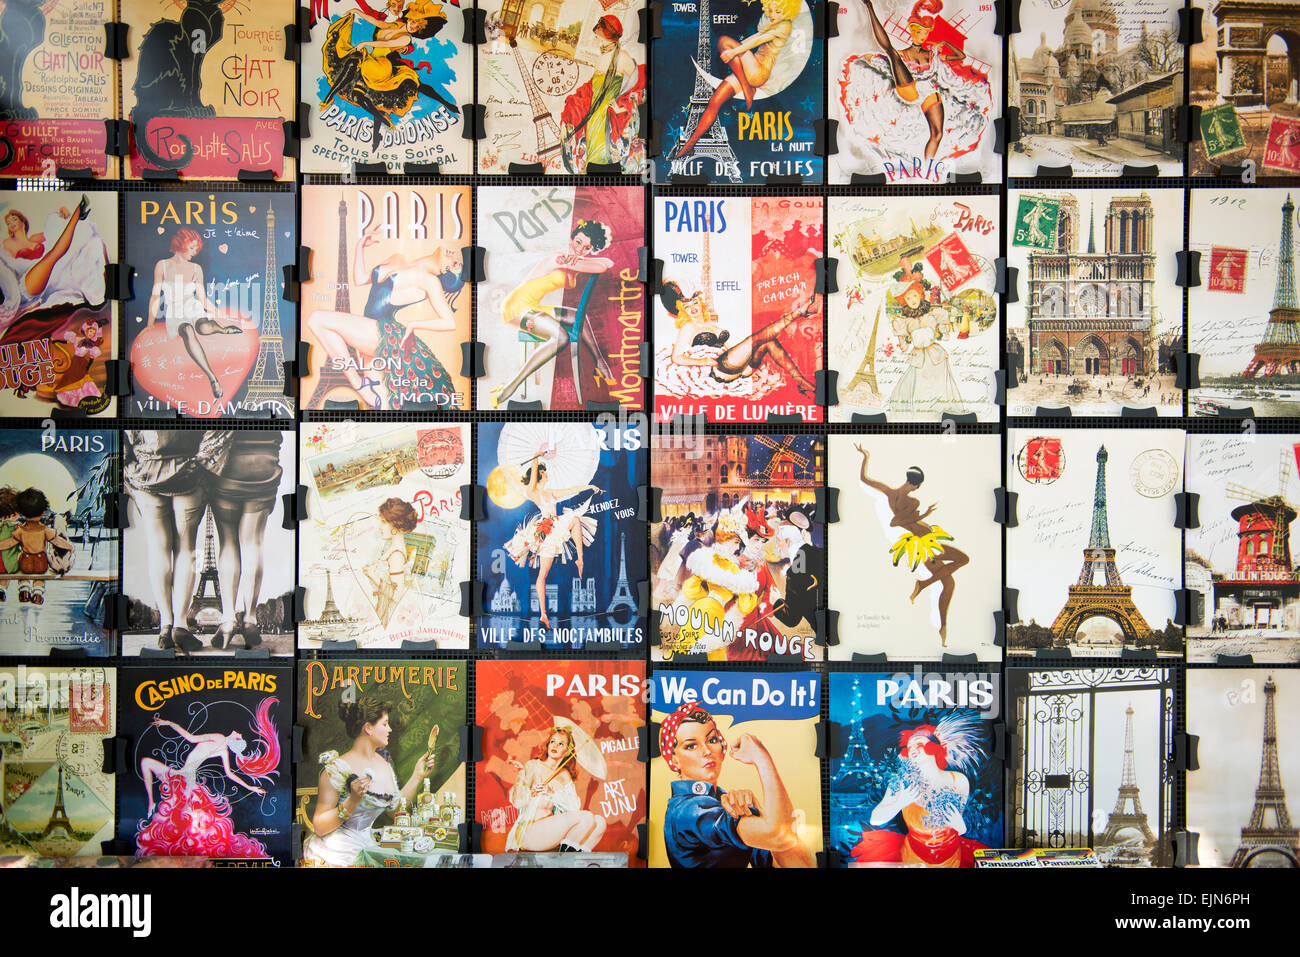 Collezioni di cartoline d'epoca della ballerina di burlesque, il famoso poster di Le Chat Noir e altre immagini da Parigi. Foto Stock